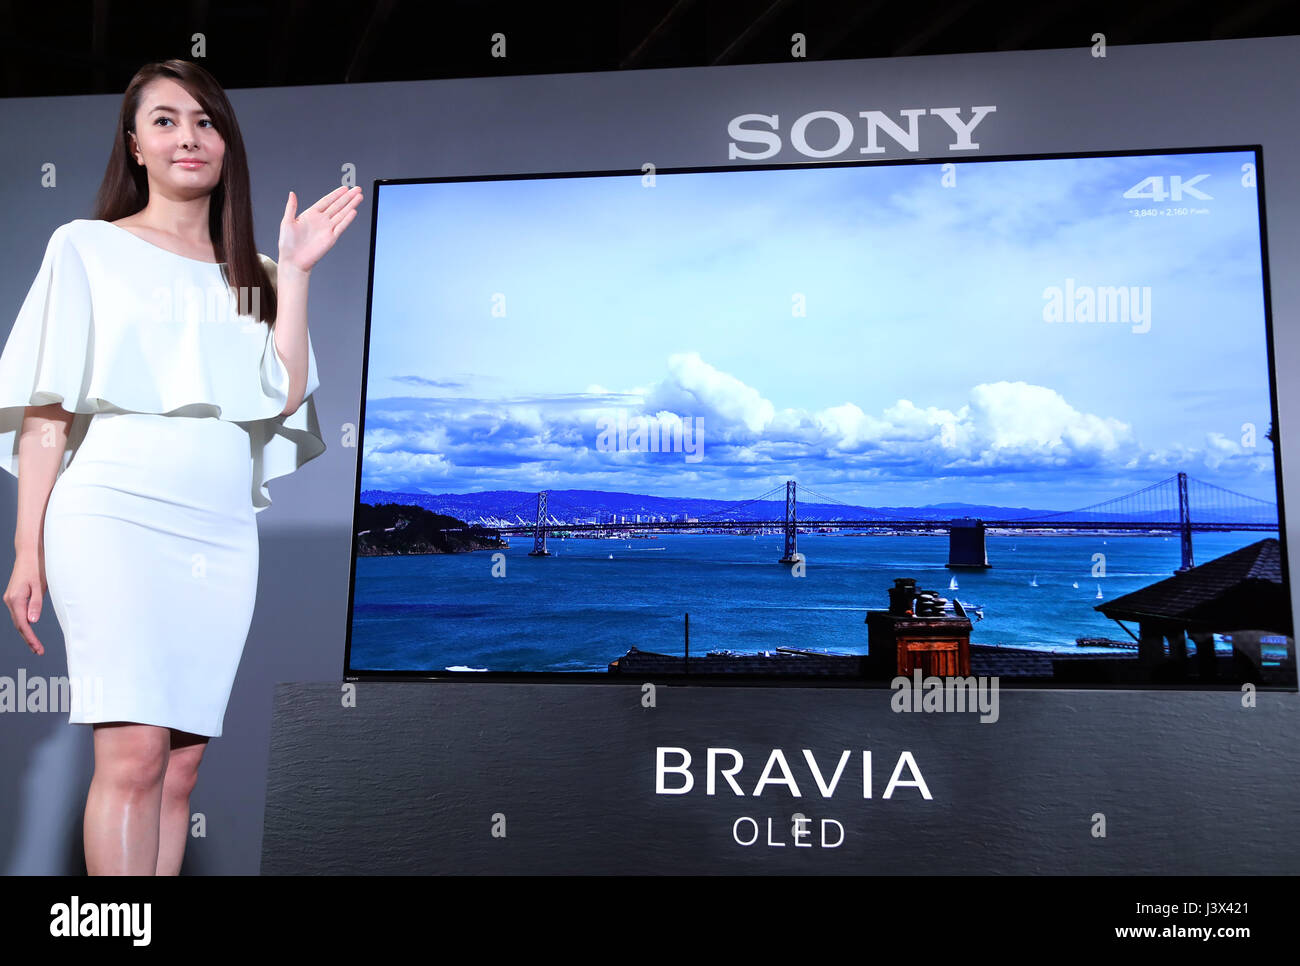 Tokyo, Japon. 8 mai, 2017. Affiche un modèle géant de l'électronique  japonais Sony a diodes électroluminescentes organiques (OLED) téléviseur  Bravia 'A1' à la salle d'exposition de Sony à Tokyo le Lundi, Mai